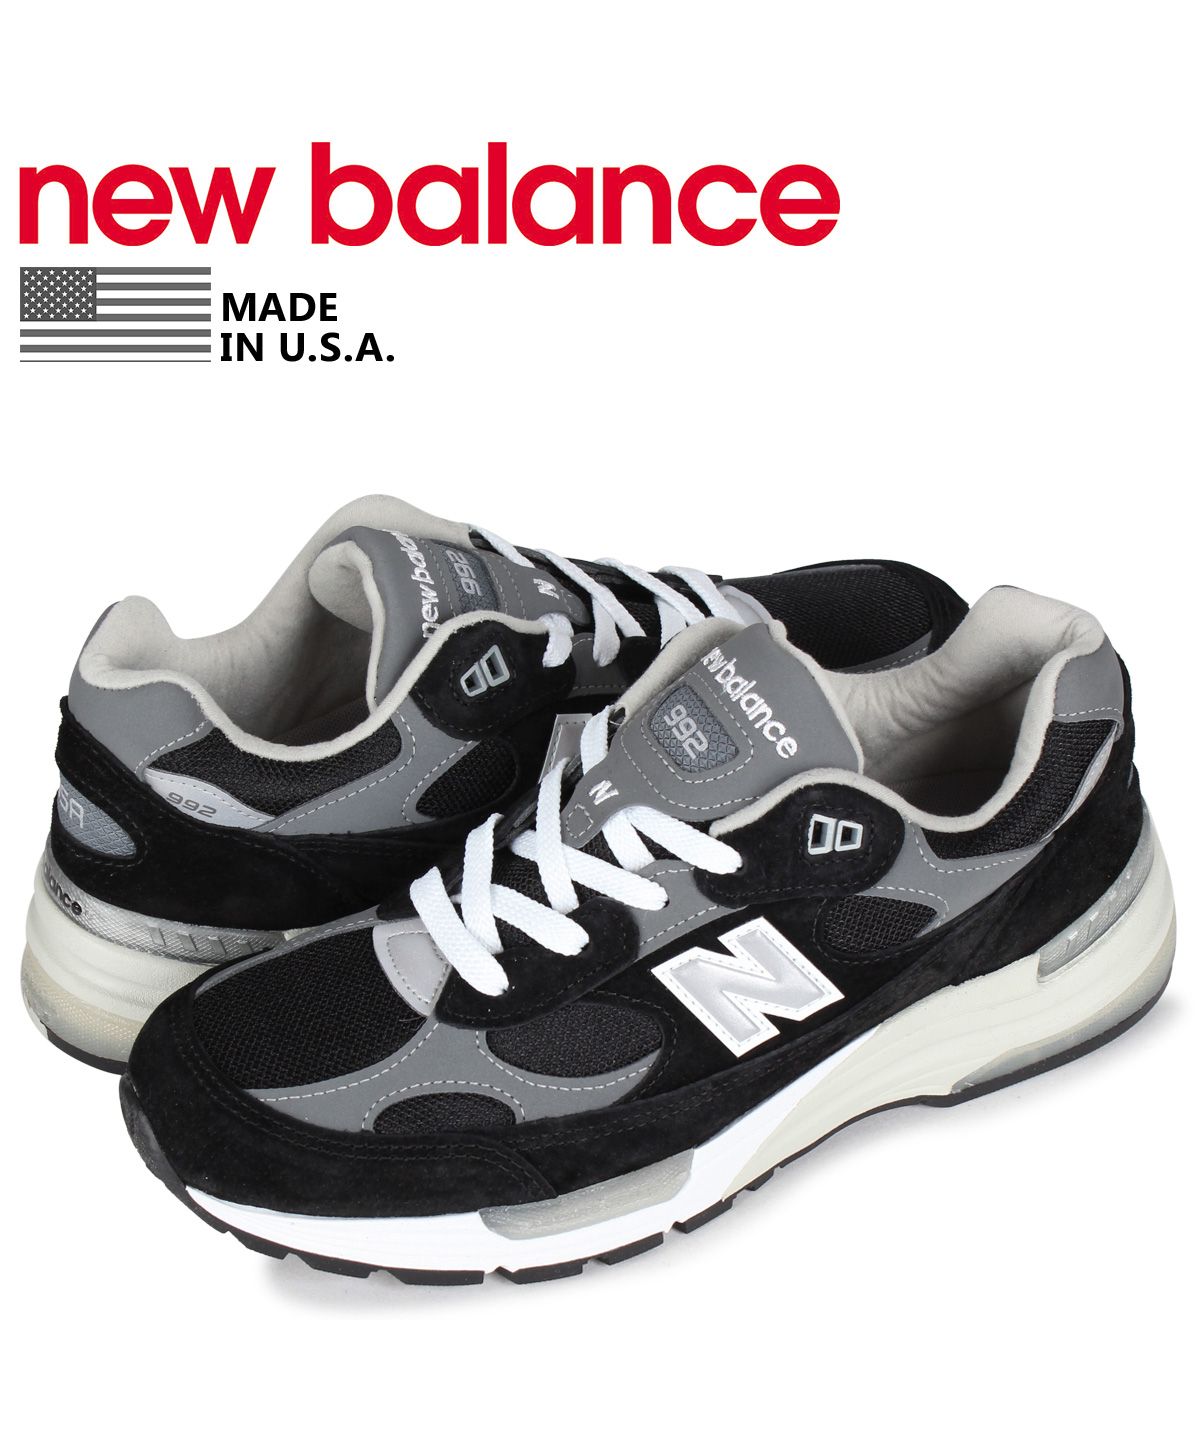 New Balance ニューバランス メンズ スニーカー  【New Balance 997H】  サイズ US_7.5(25.5cm) T iple Black